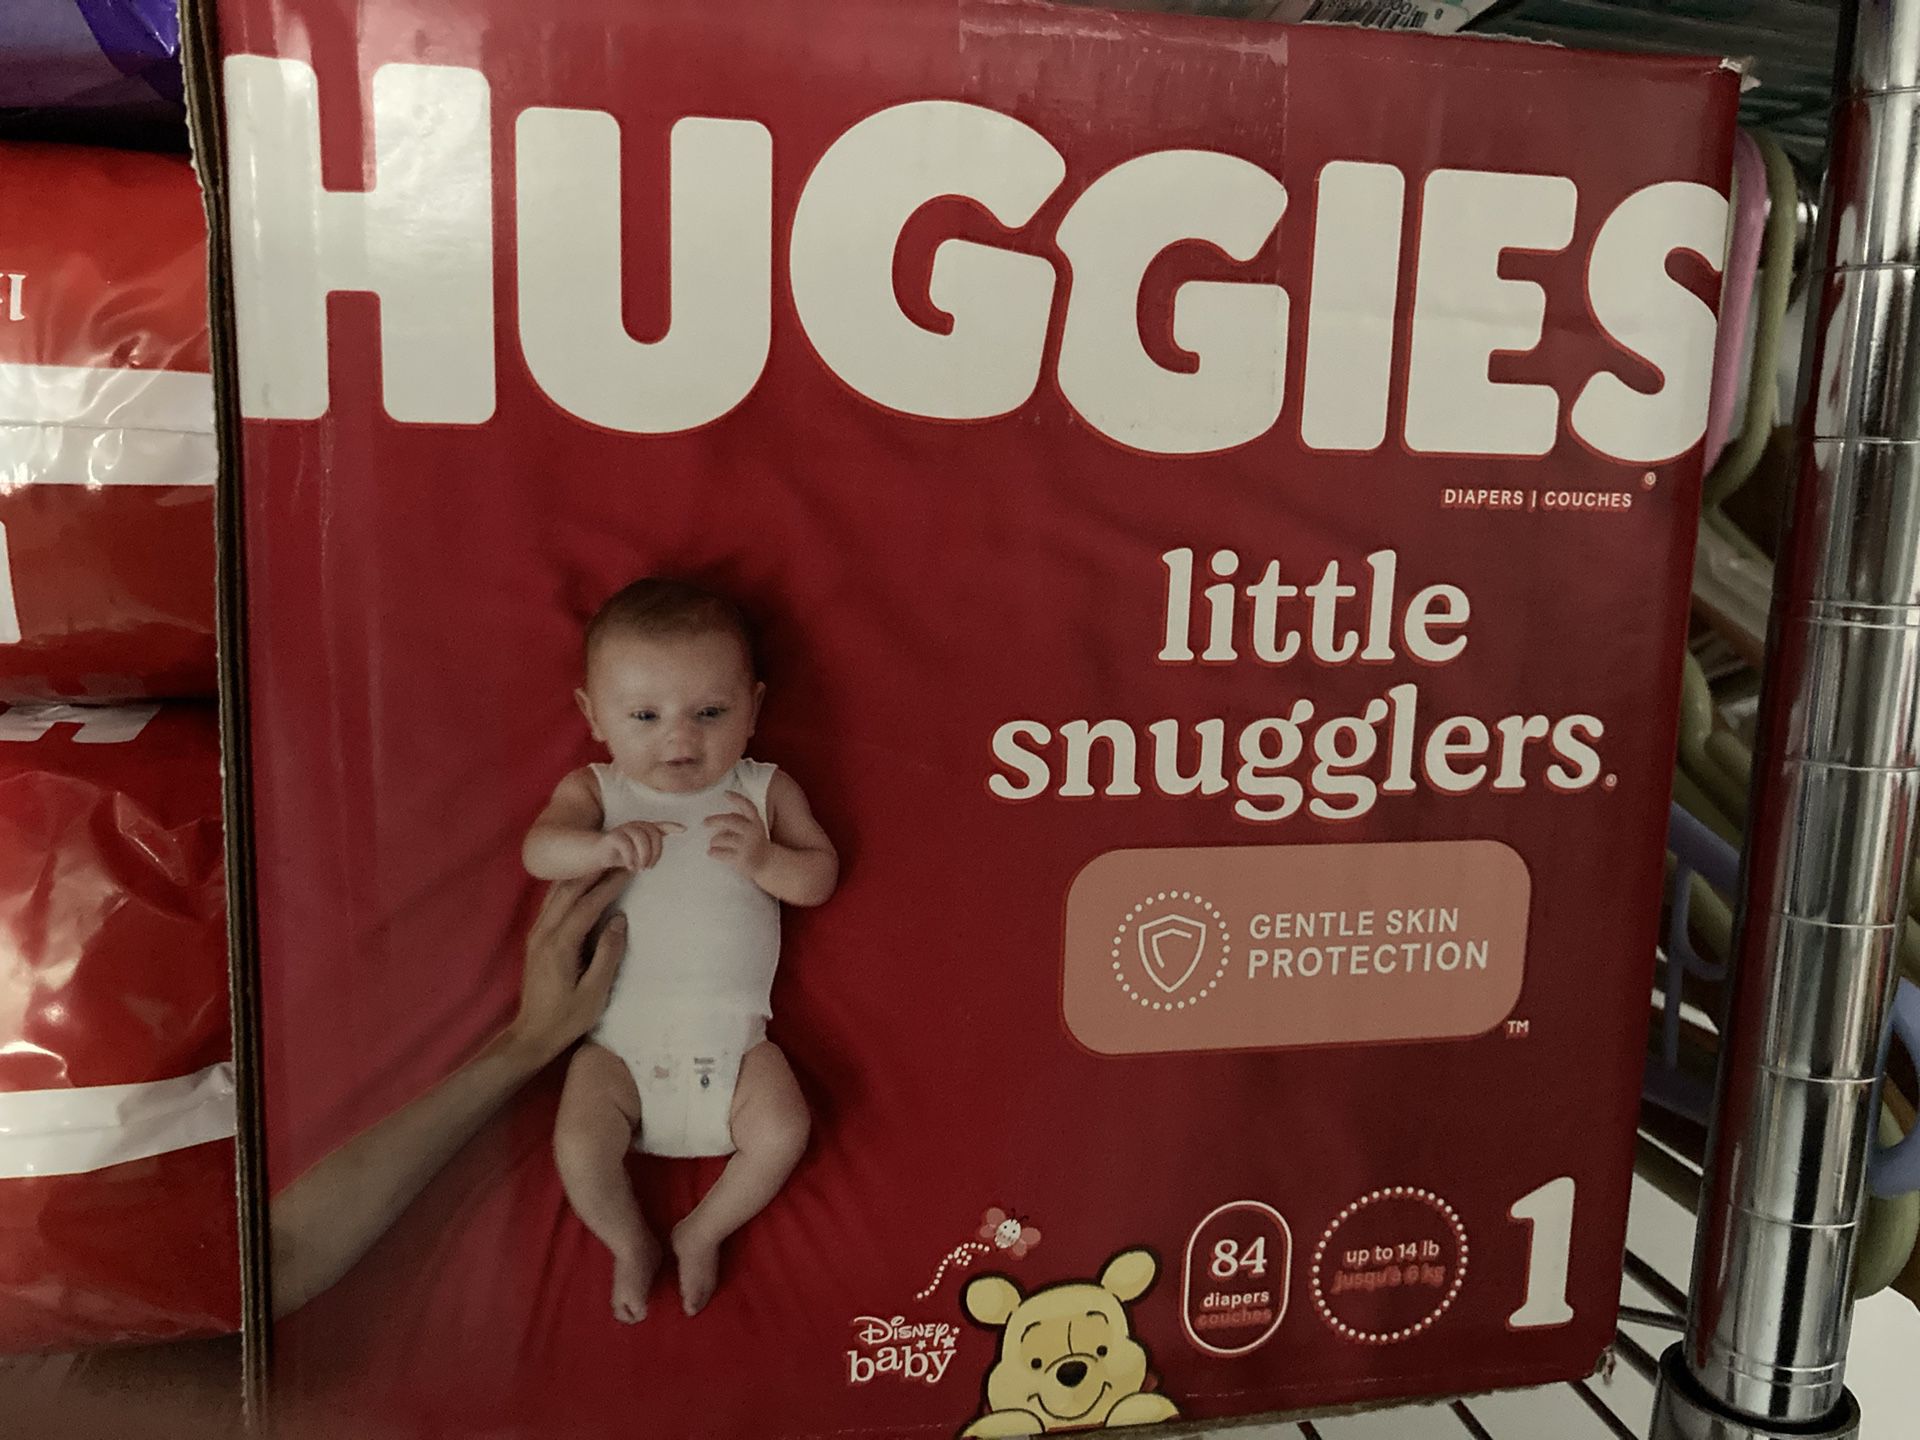 Box of Huggies diapers 